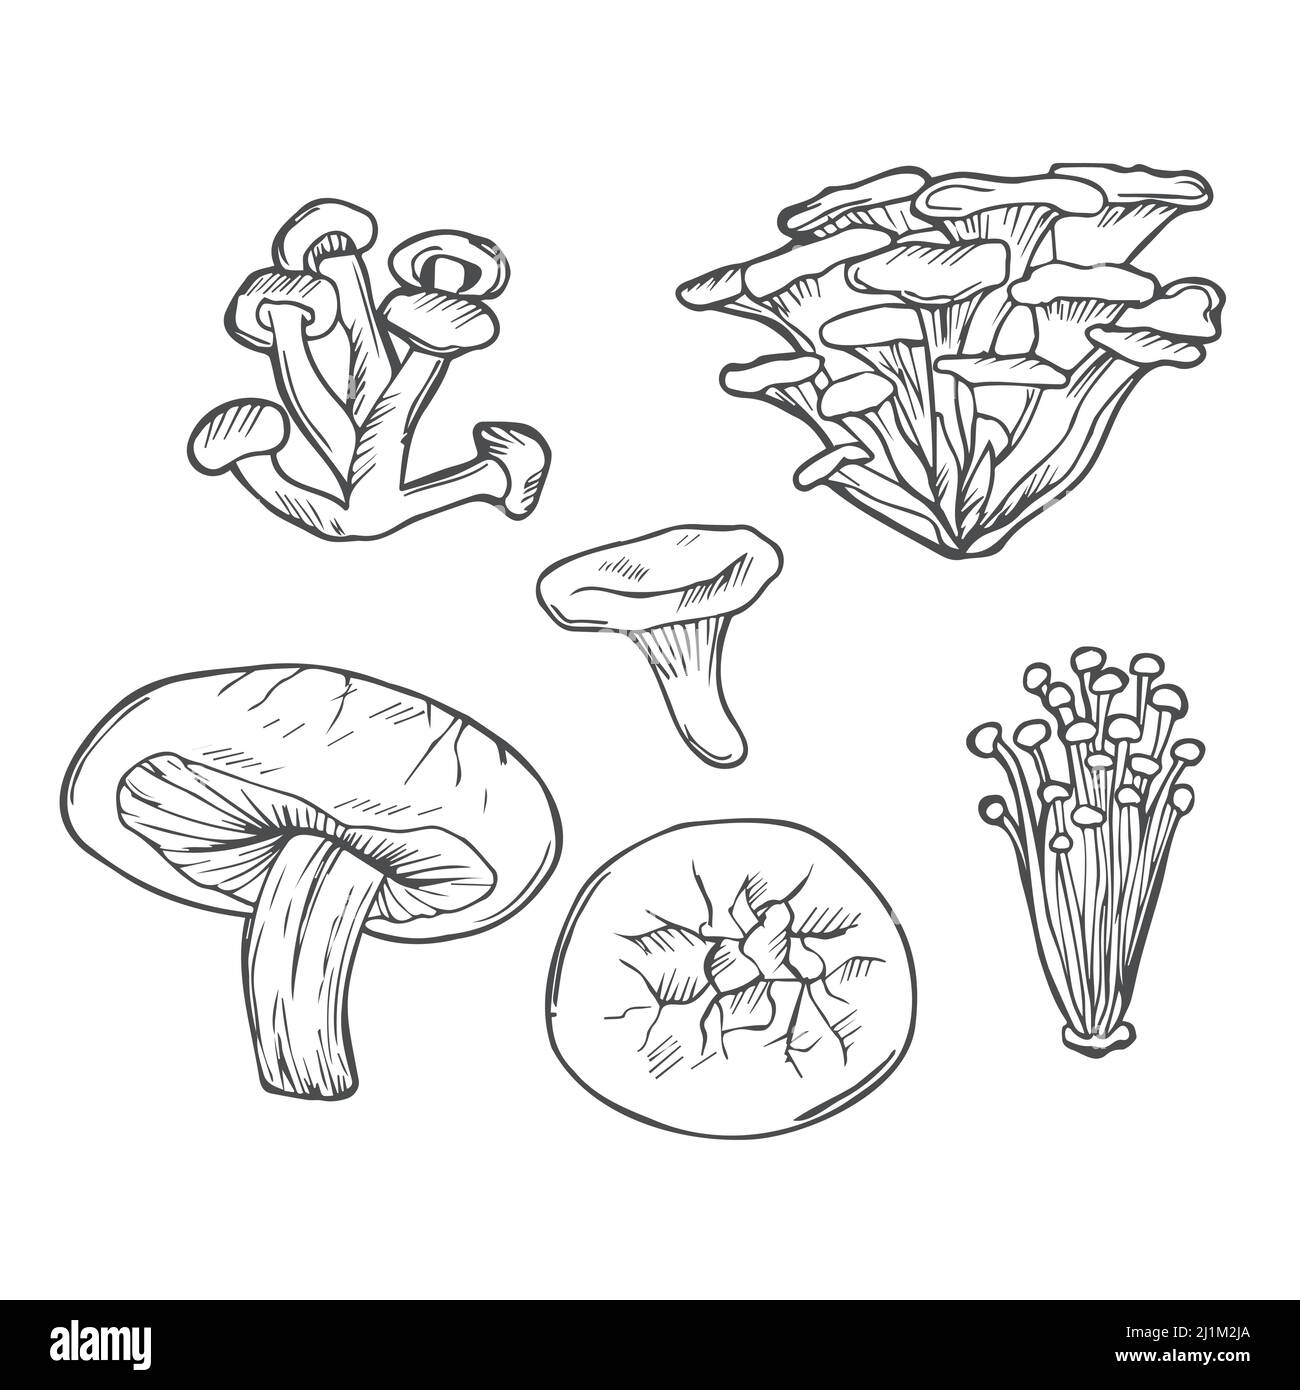 Doodle Mushroom handgezeichneter Vektor setl. Essbare Pilze Shiitake, Pfifferlinge, Enokitake, Honig-Agaric, frische Bio-Lebensmittel isoliert auf weiß. Stock Vektor